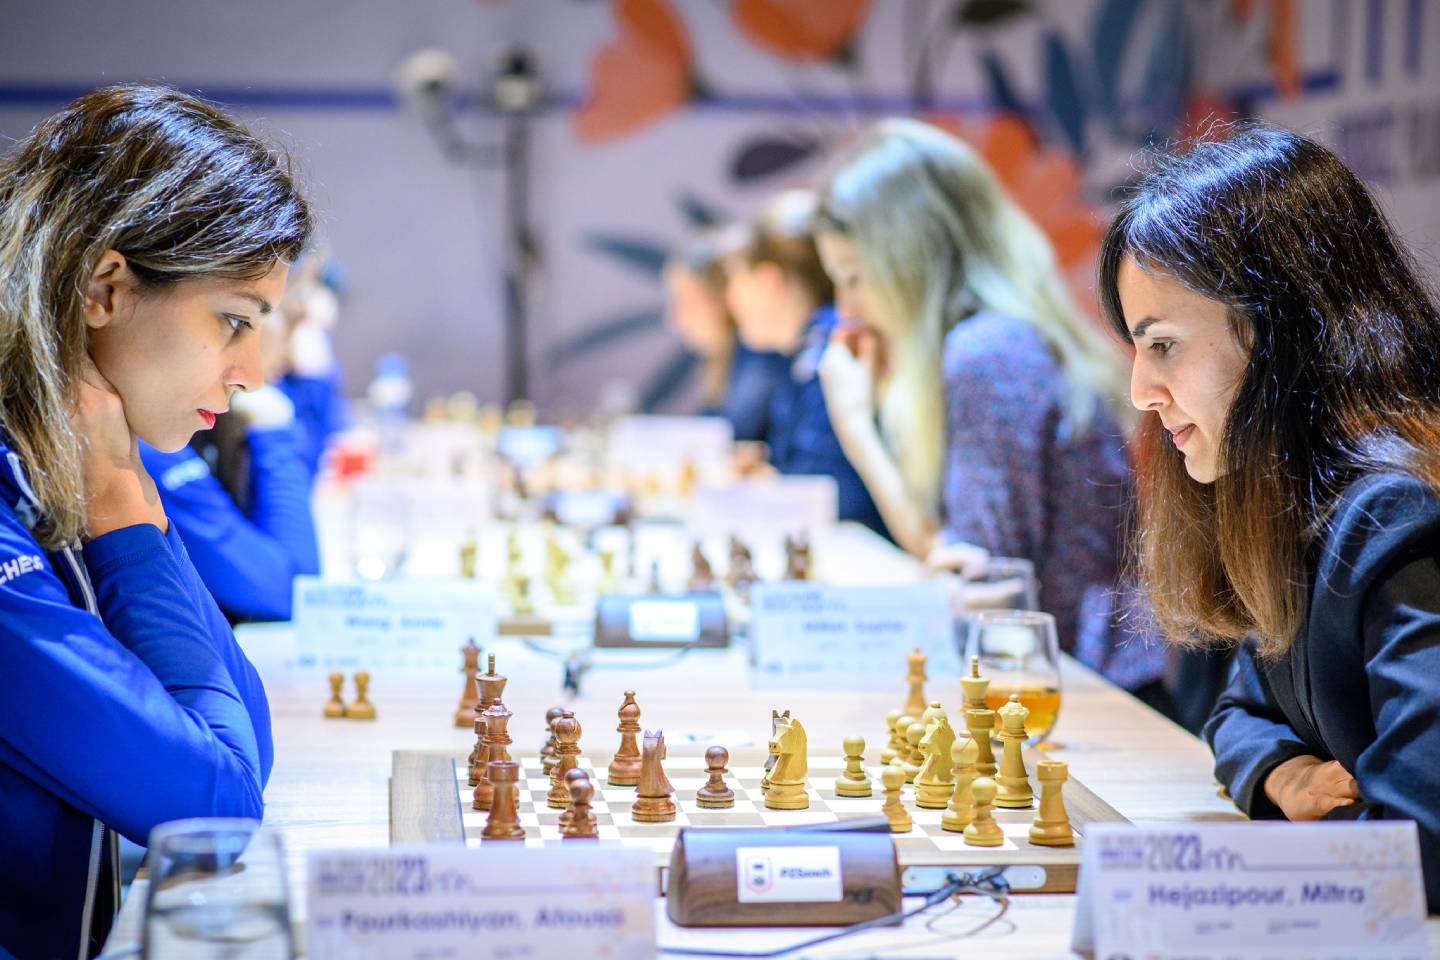 Новости спорта / Новости спорта в мире и Казахстане / Женская сборная Казахстана по шахматам заняла второе место на чемпионате мира